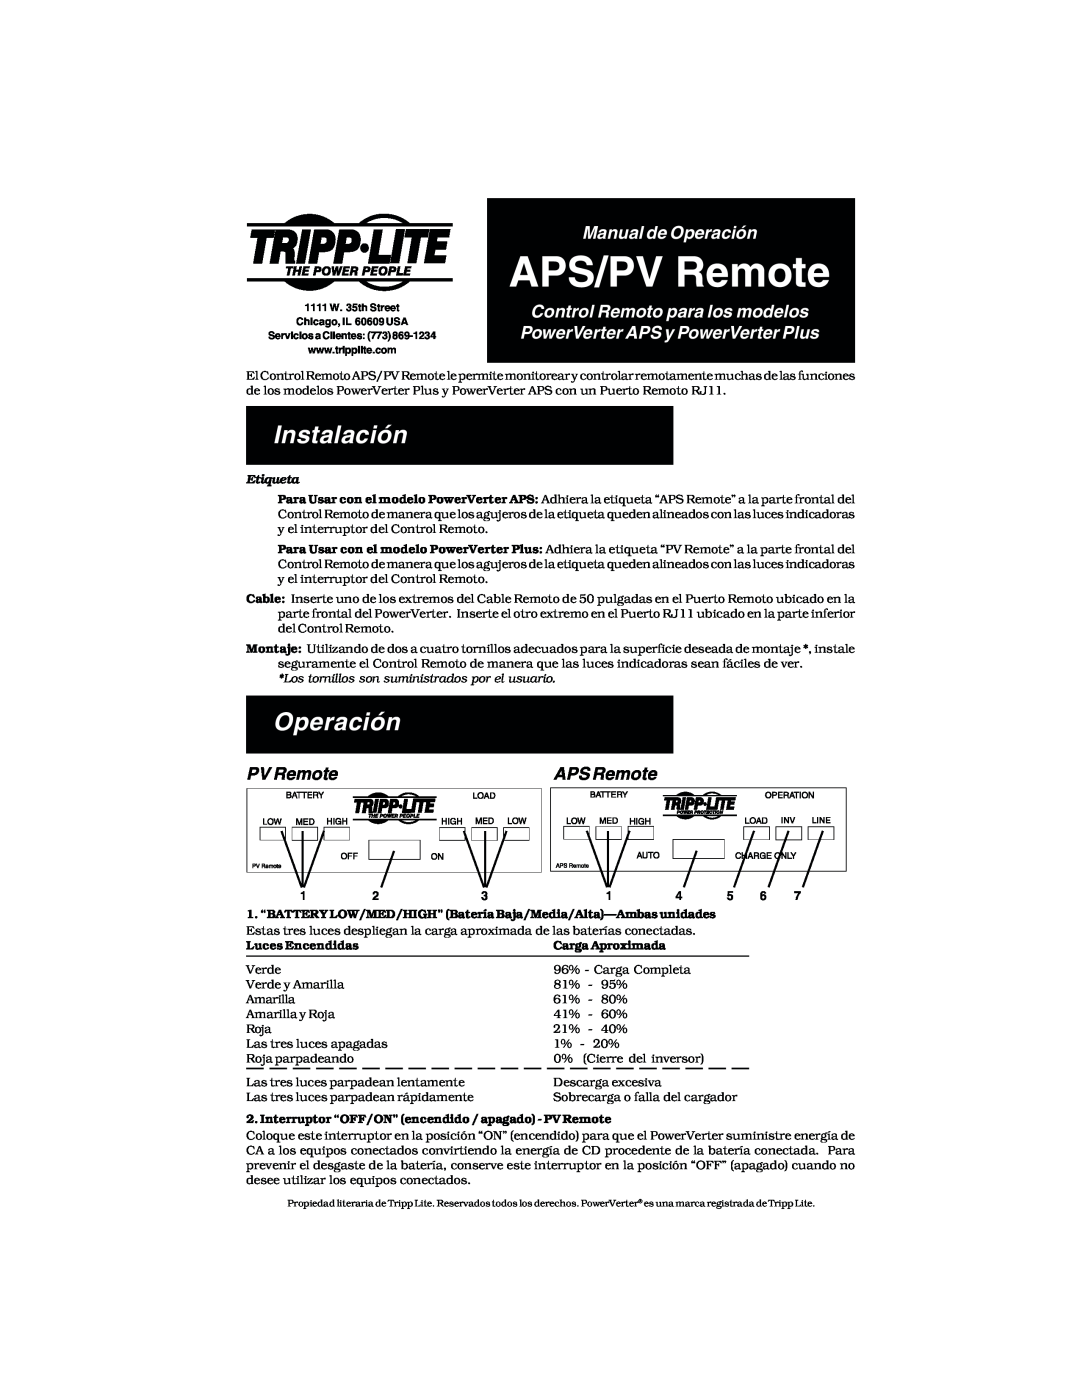 Tripp Lite APS/PV Instalación, Manual de Operación, Control Remoto para los modelos PowerVerter APS y PowerVerter Plus 